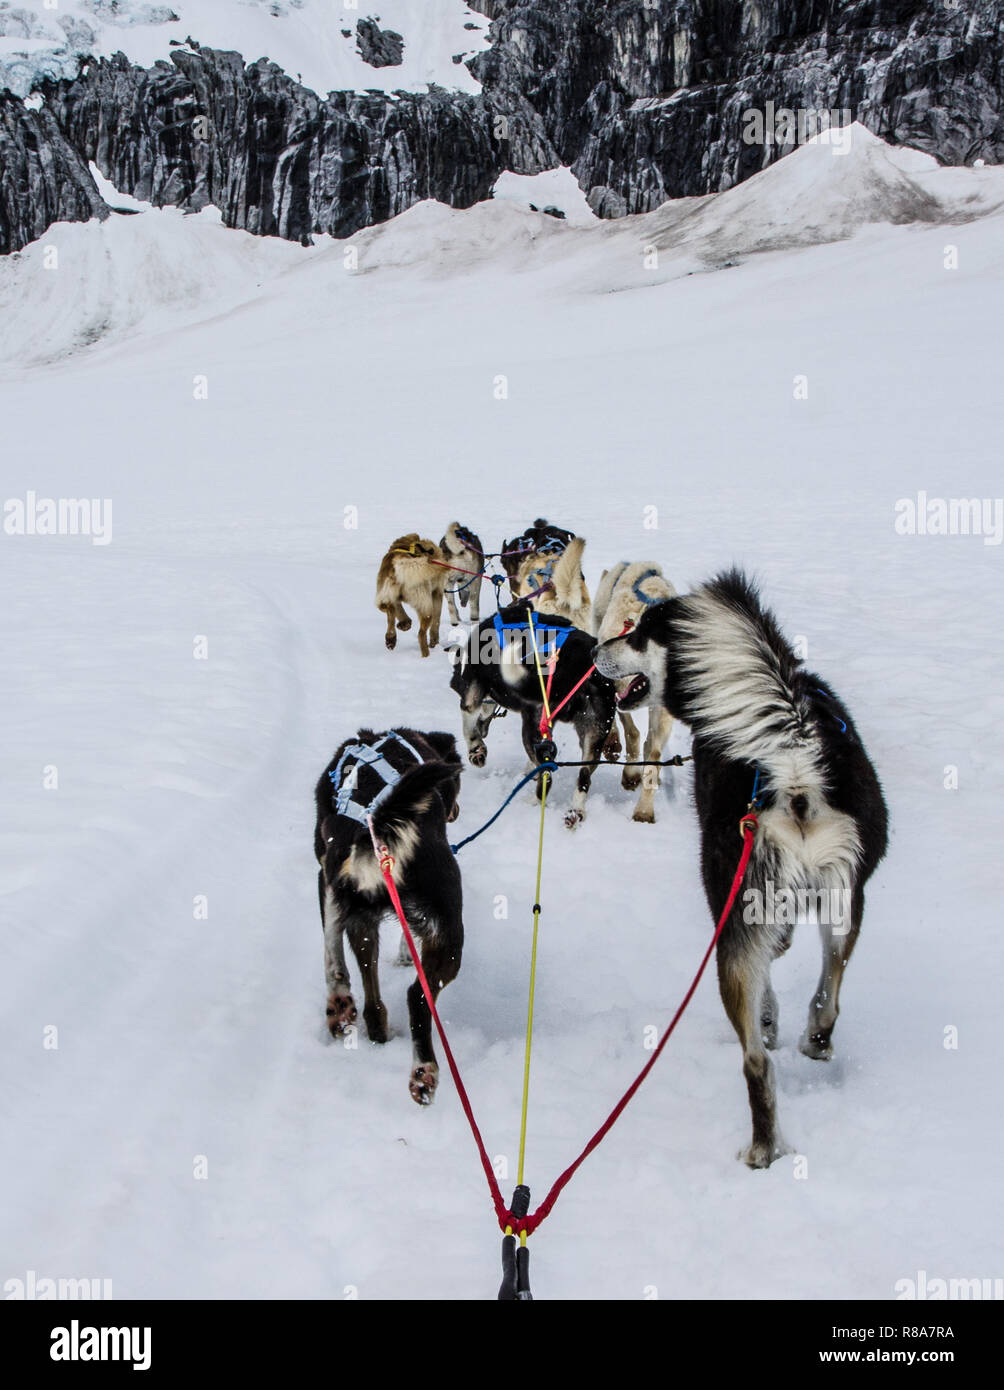 Schlittenhunde Rennen über Mendenhall Gletscher, Alaska. Hundeschlitten einen extremen Winter Abenteuer Sport und beliebte touristische Aktivität. Stockfoto